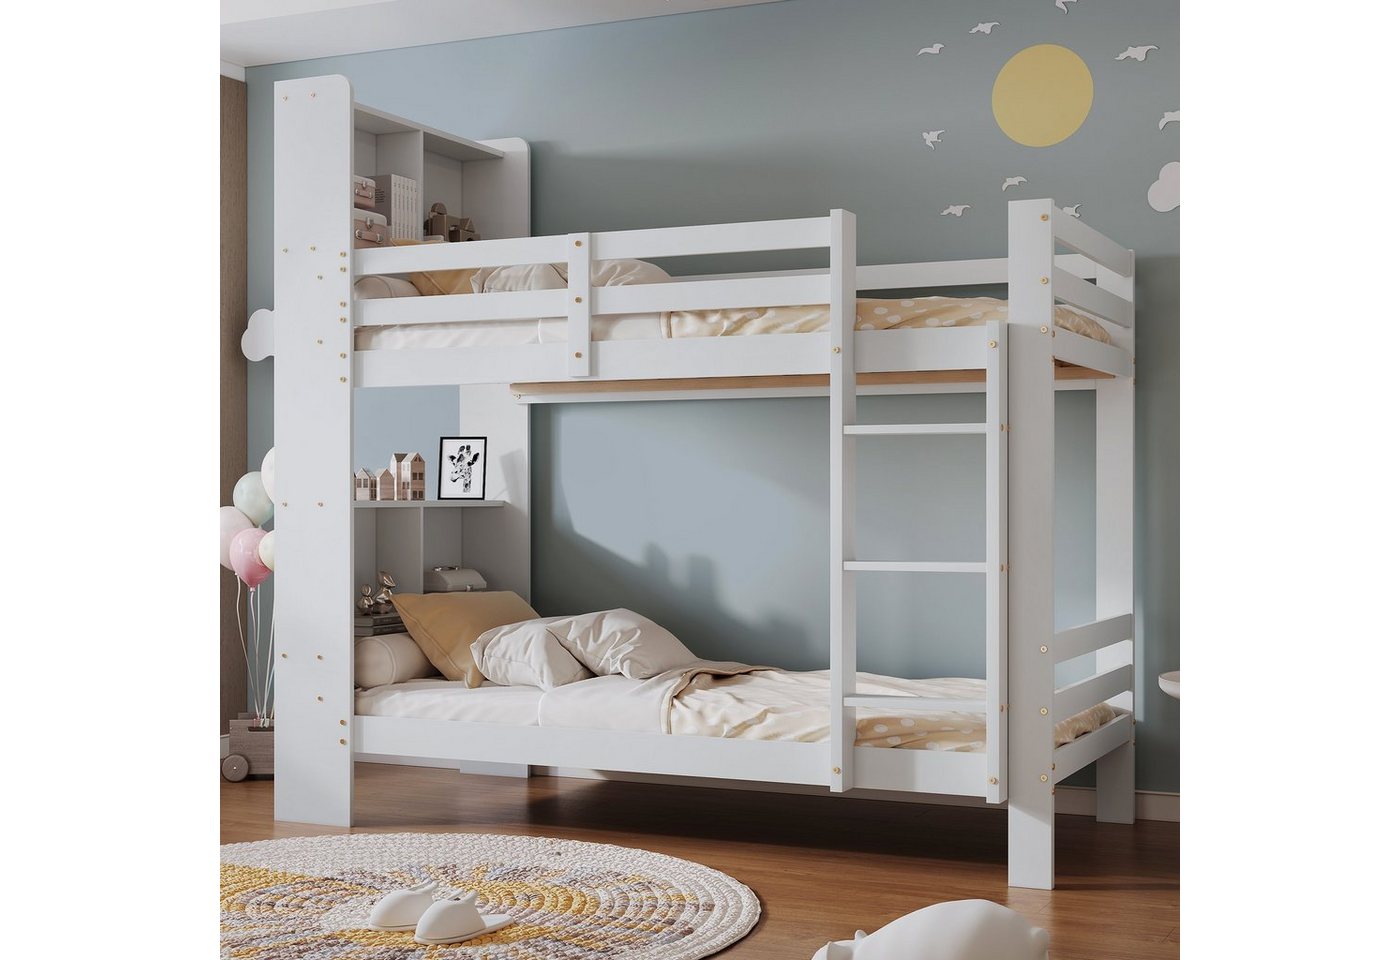 Ulife Etagenbett Kinderbett mit Regalen und dreistufiger,Stauraum-Holzbett von Ulife